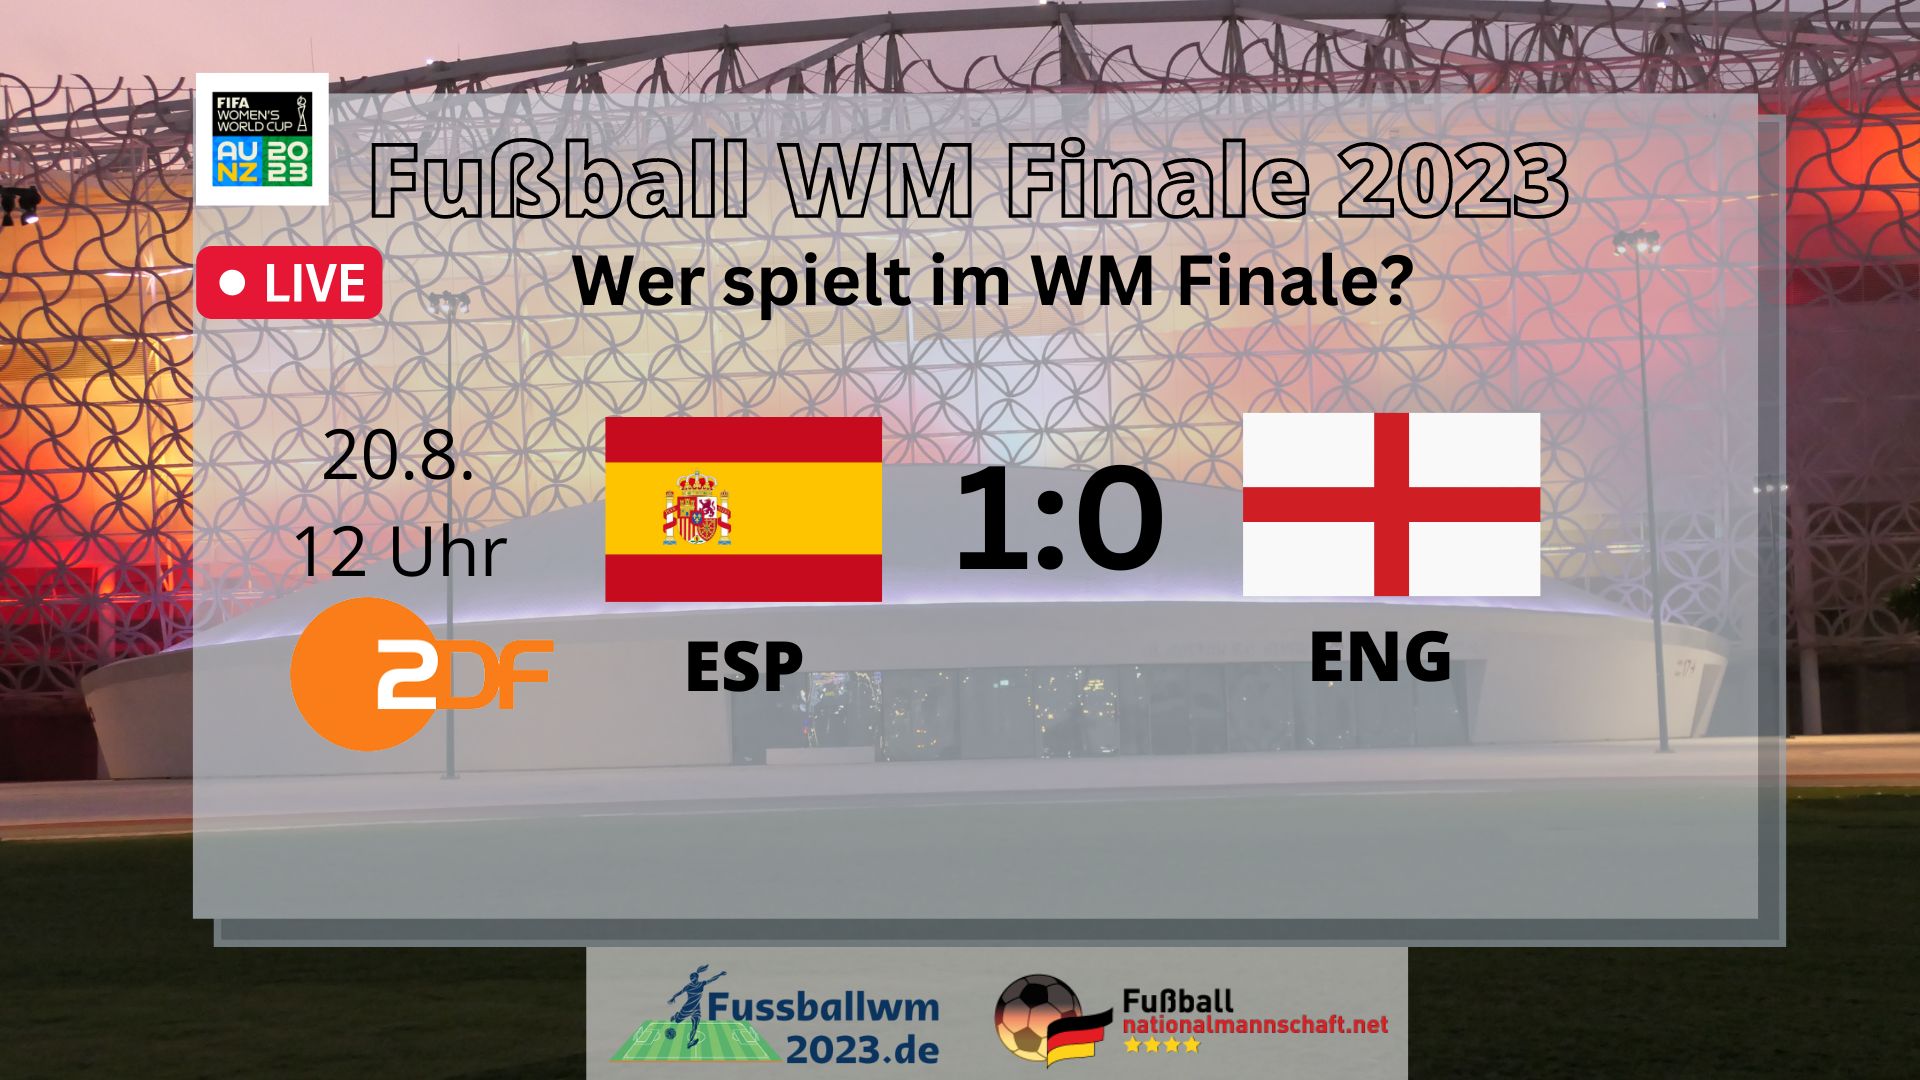 WM Finale 2023 and Endspiel der Fußball WM 2023 -Wer wird Fußball Weltmeister 2023?